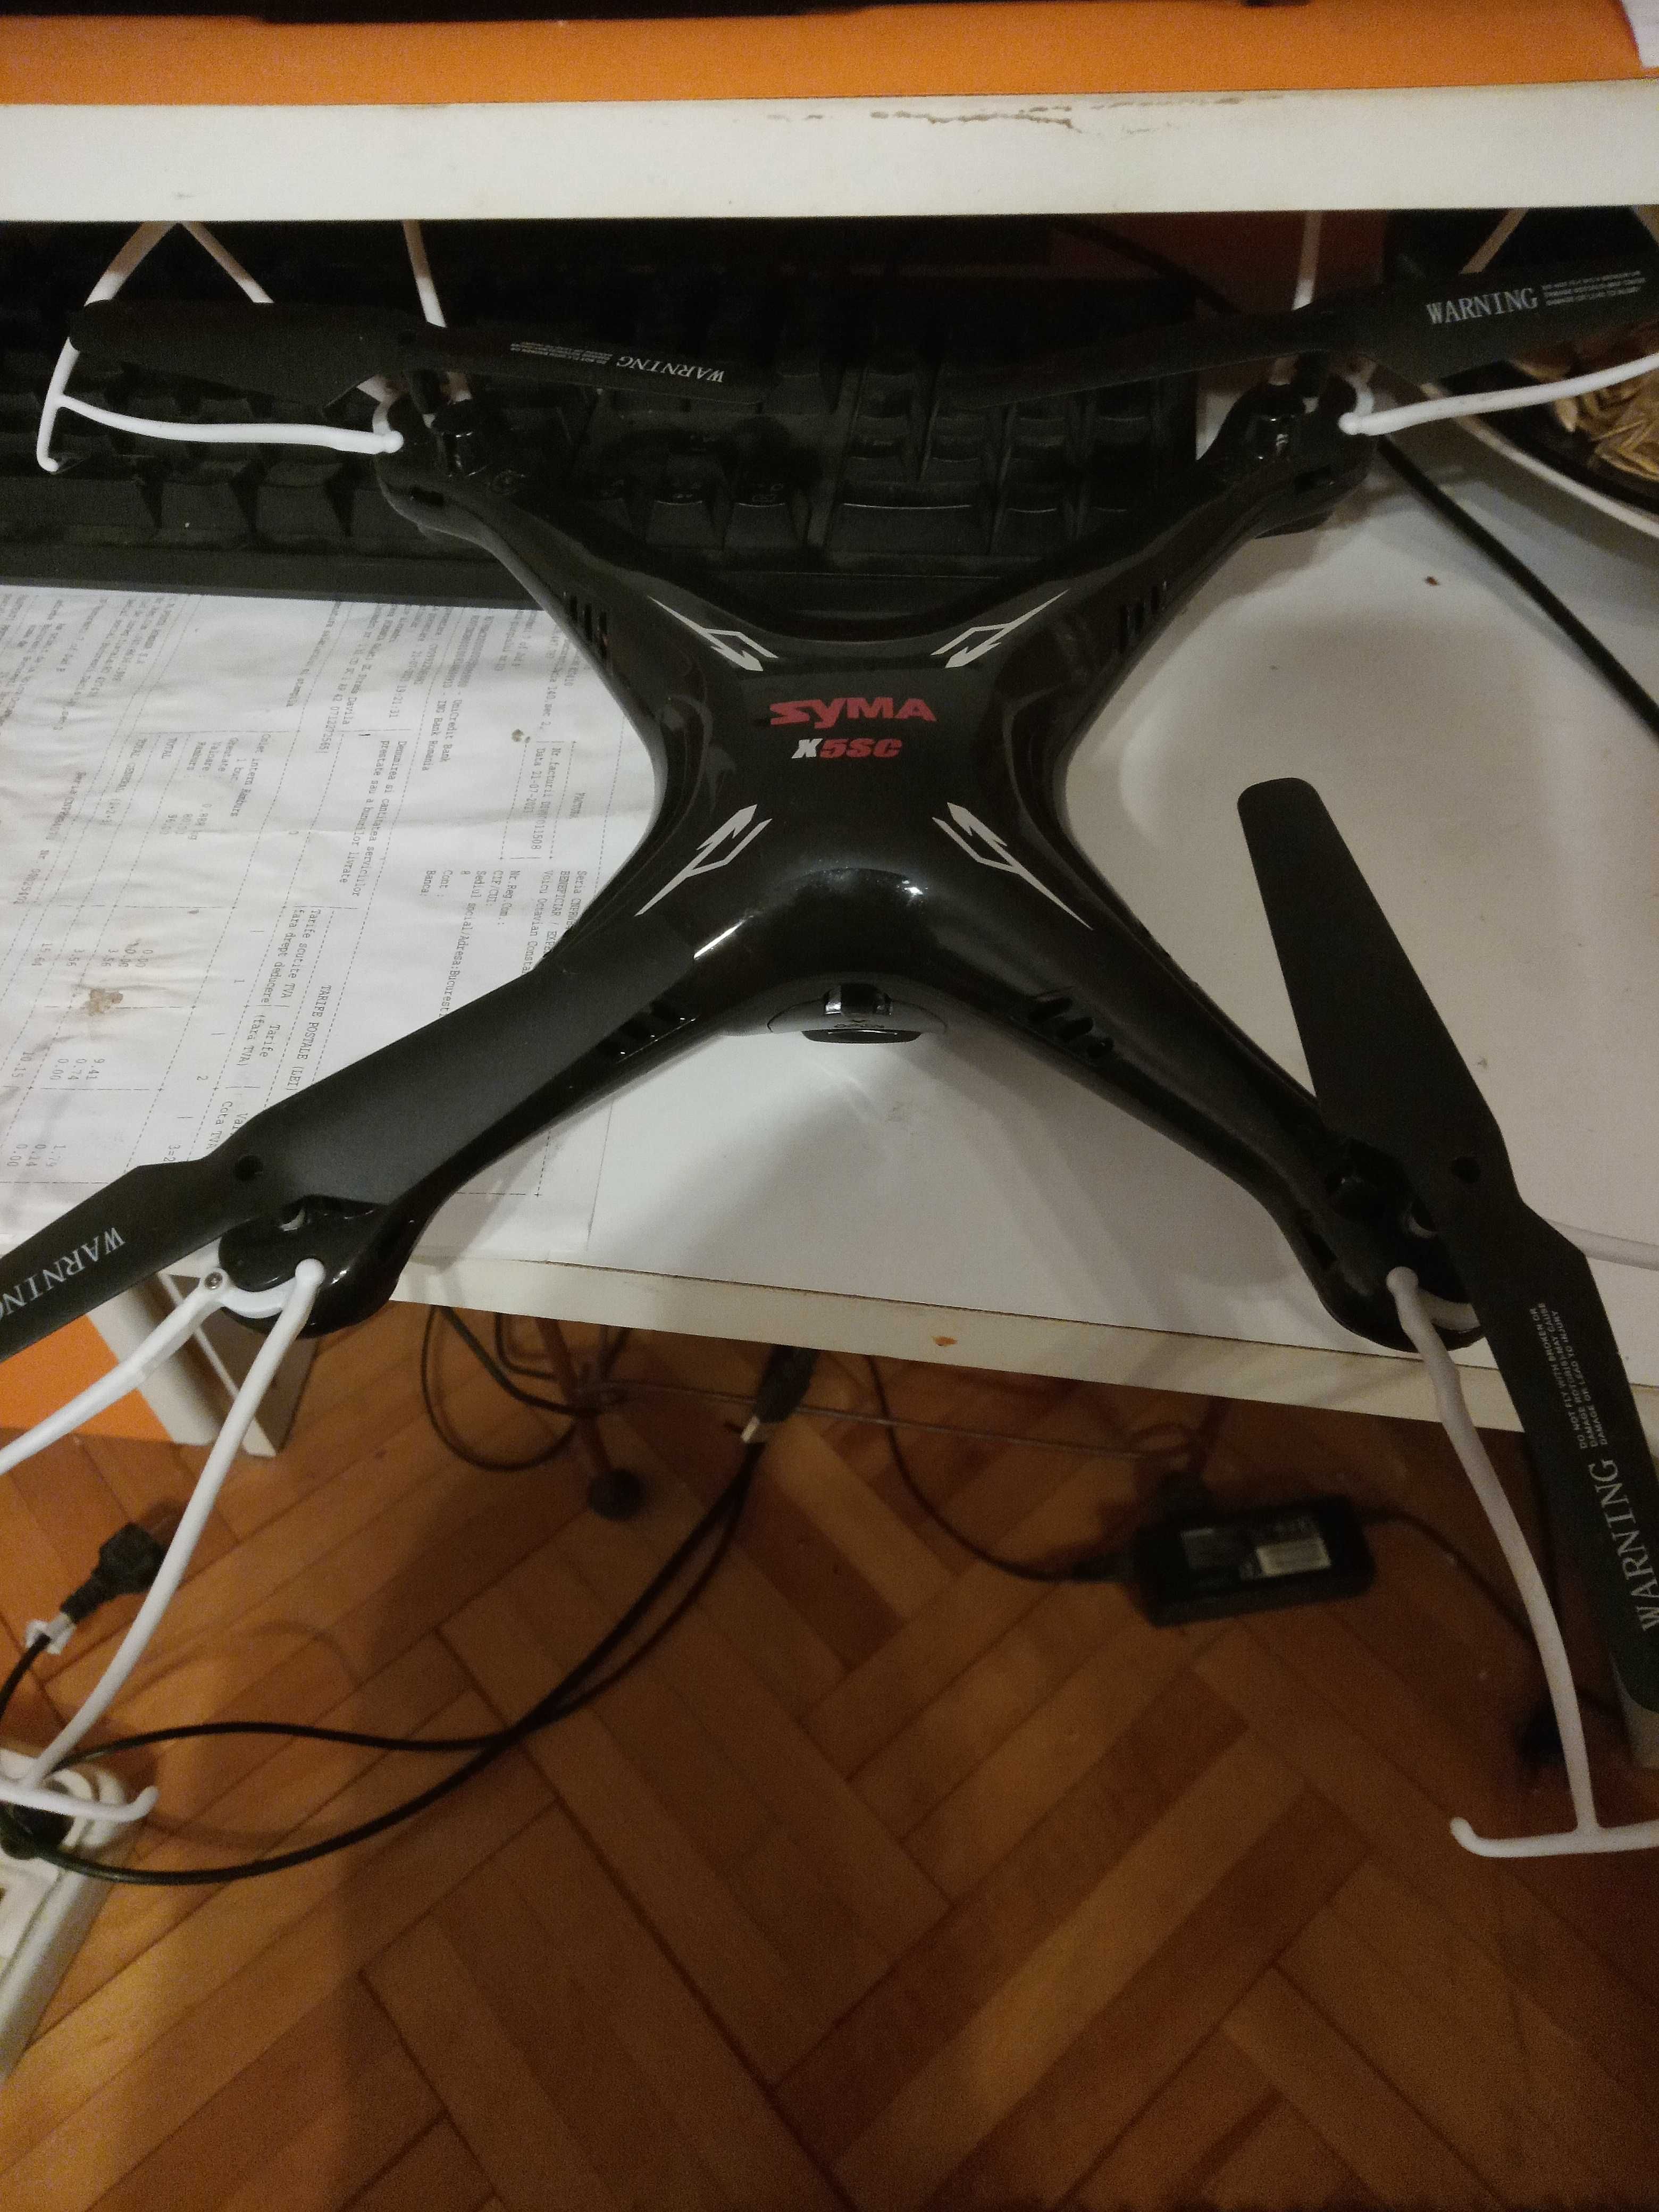 Drona Syma X5sc completa pentru piese